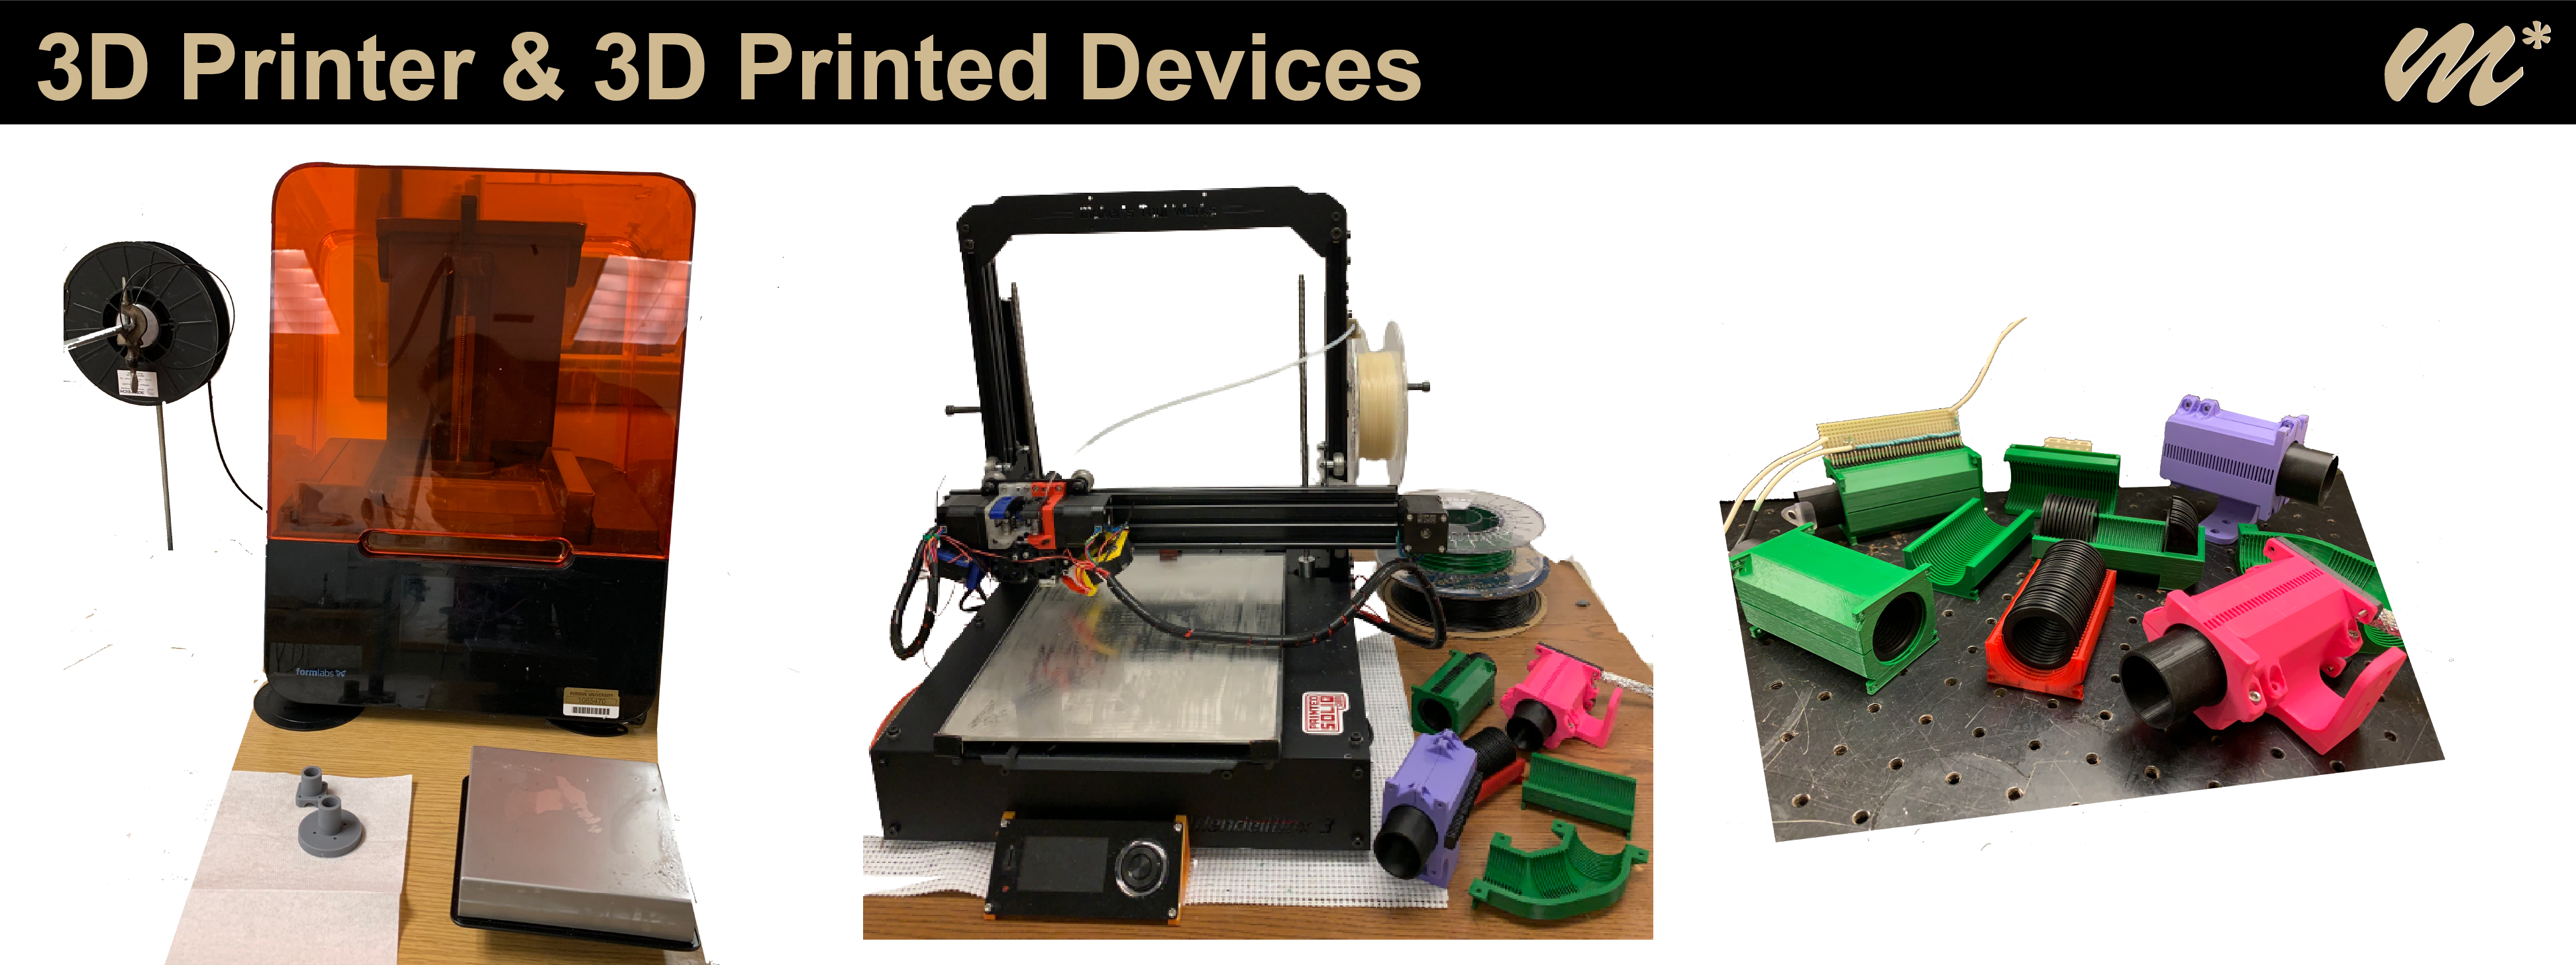 Web_Instruments_3D-printer.png